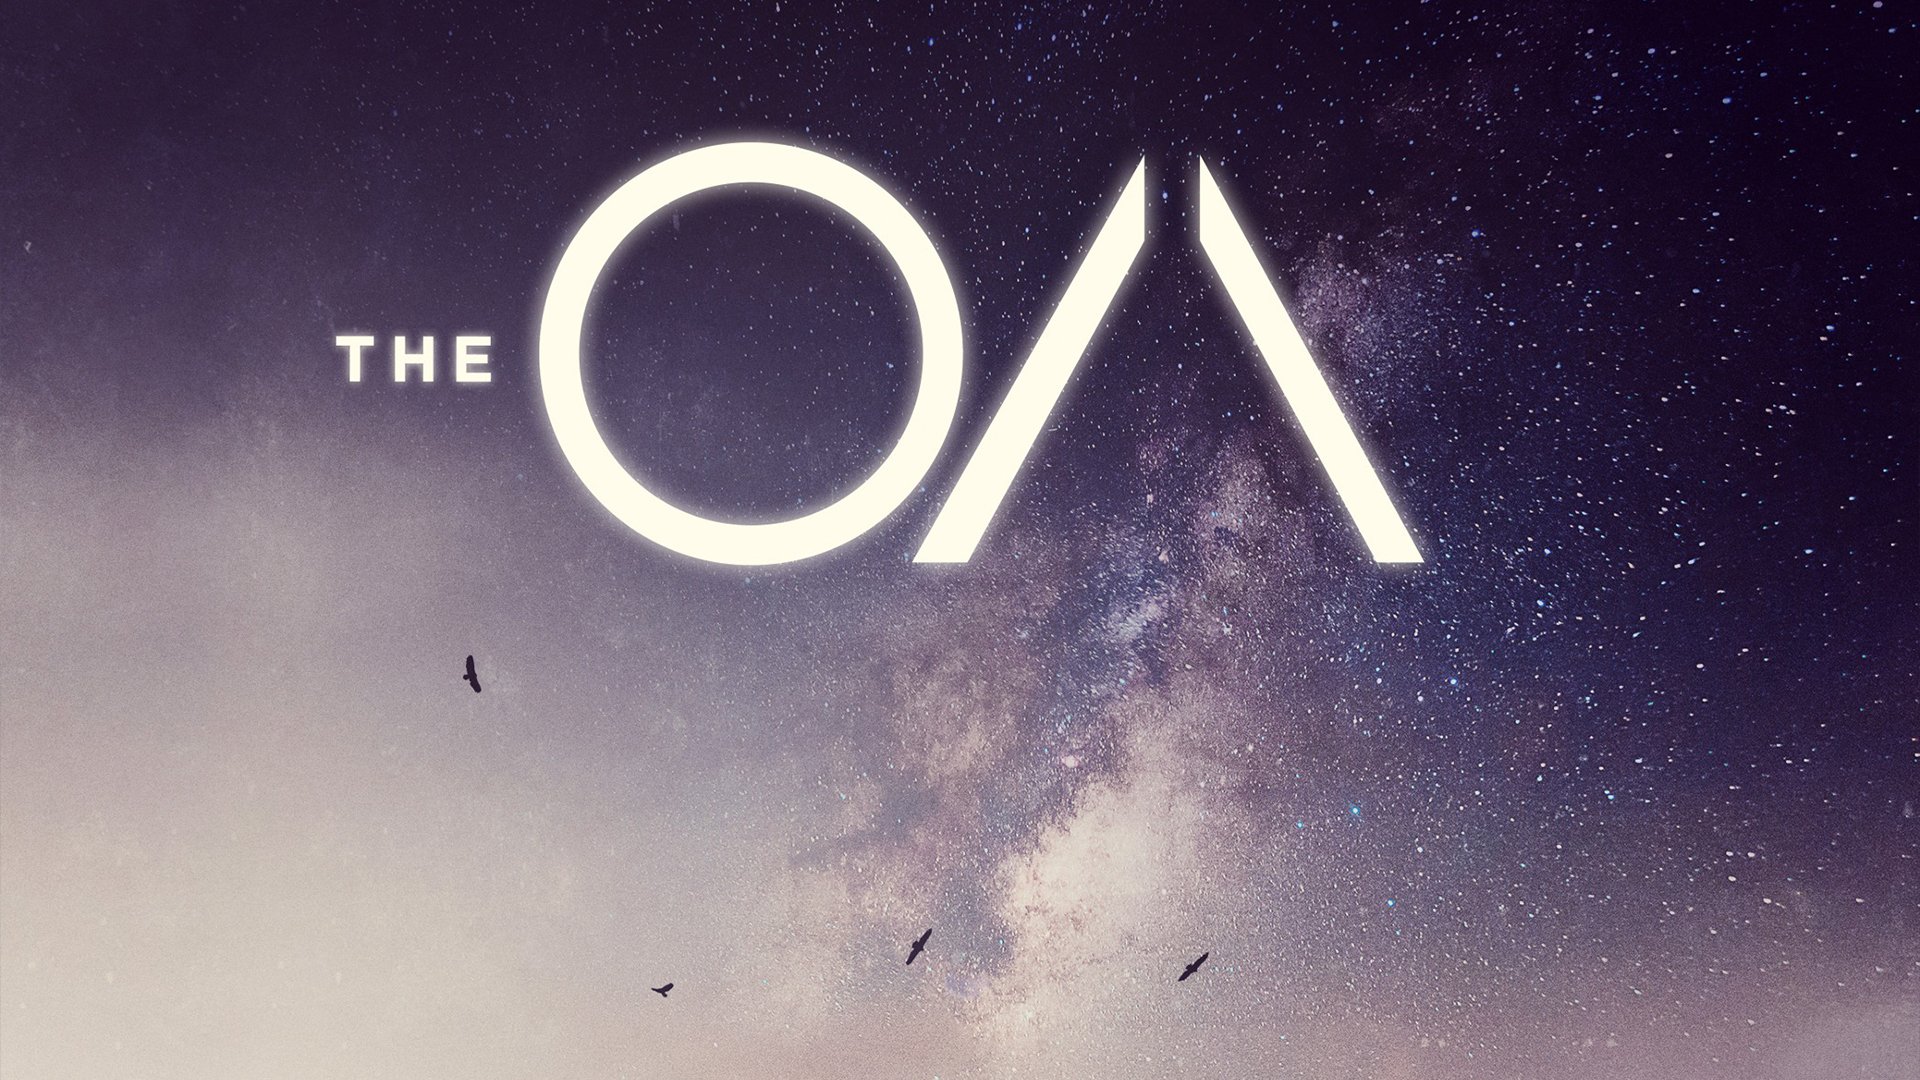 The OA, Tv series, Netflix Wallpaper HD / Desktop